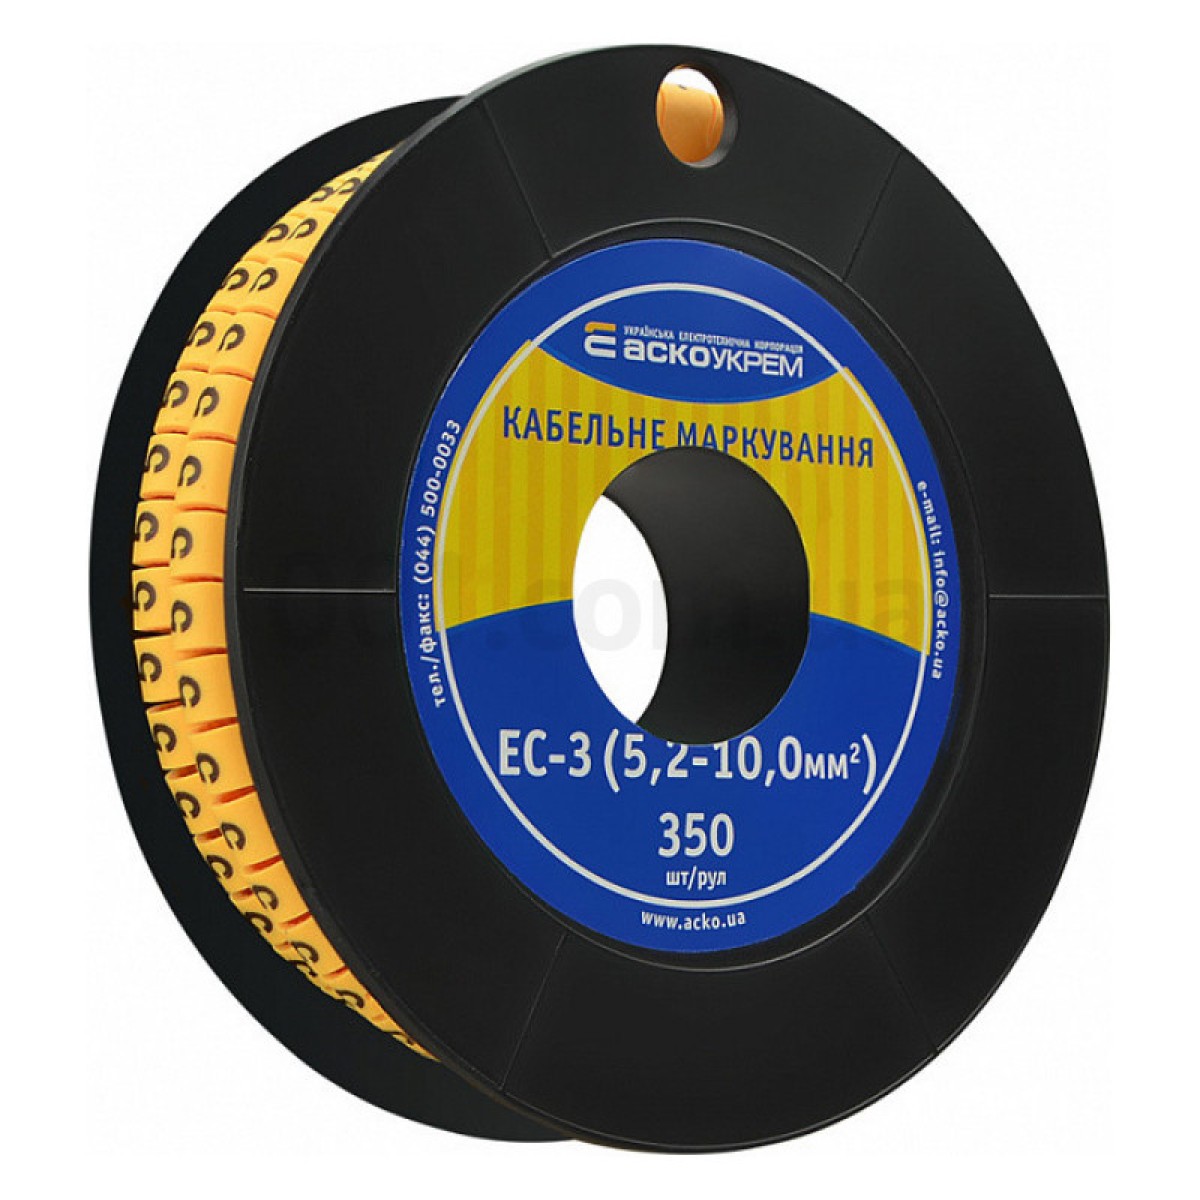 Маркировка EC-3 для кабеля 5,2-10,0 мм² символ «5» (рулон 250 шт.), АСКО-УКРЕМ 256_256.jpg